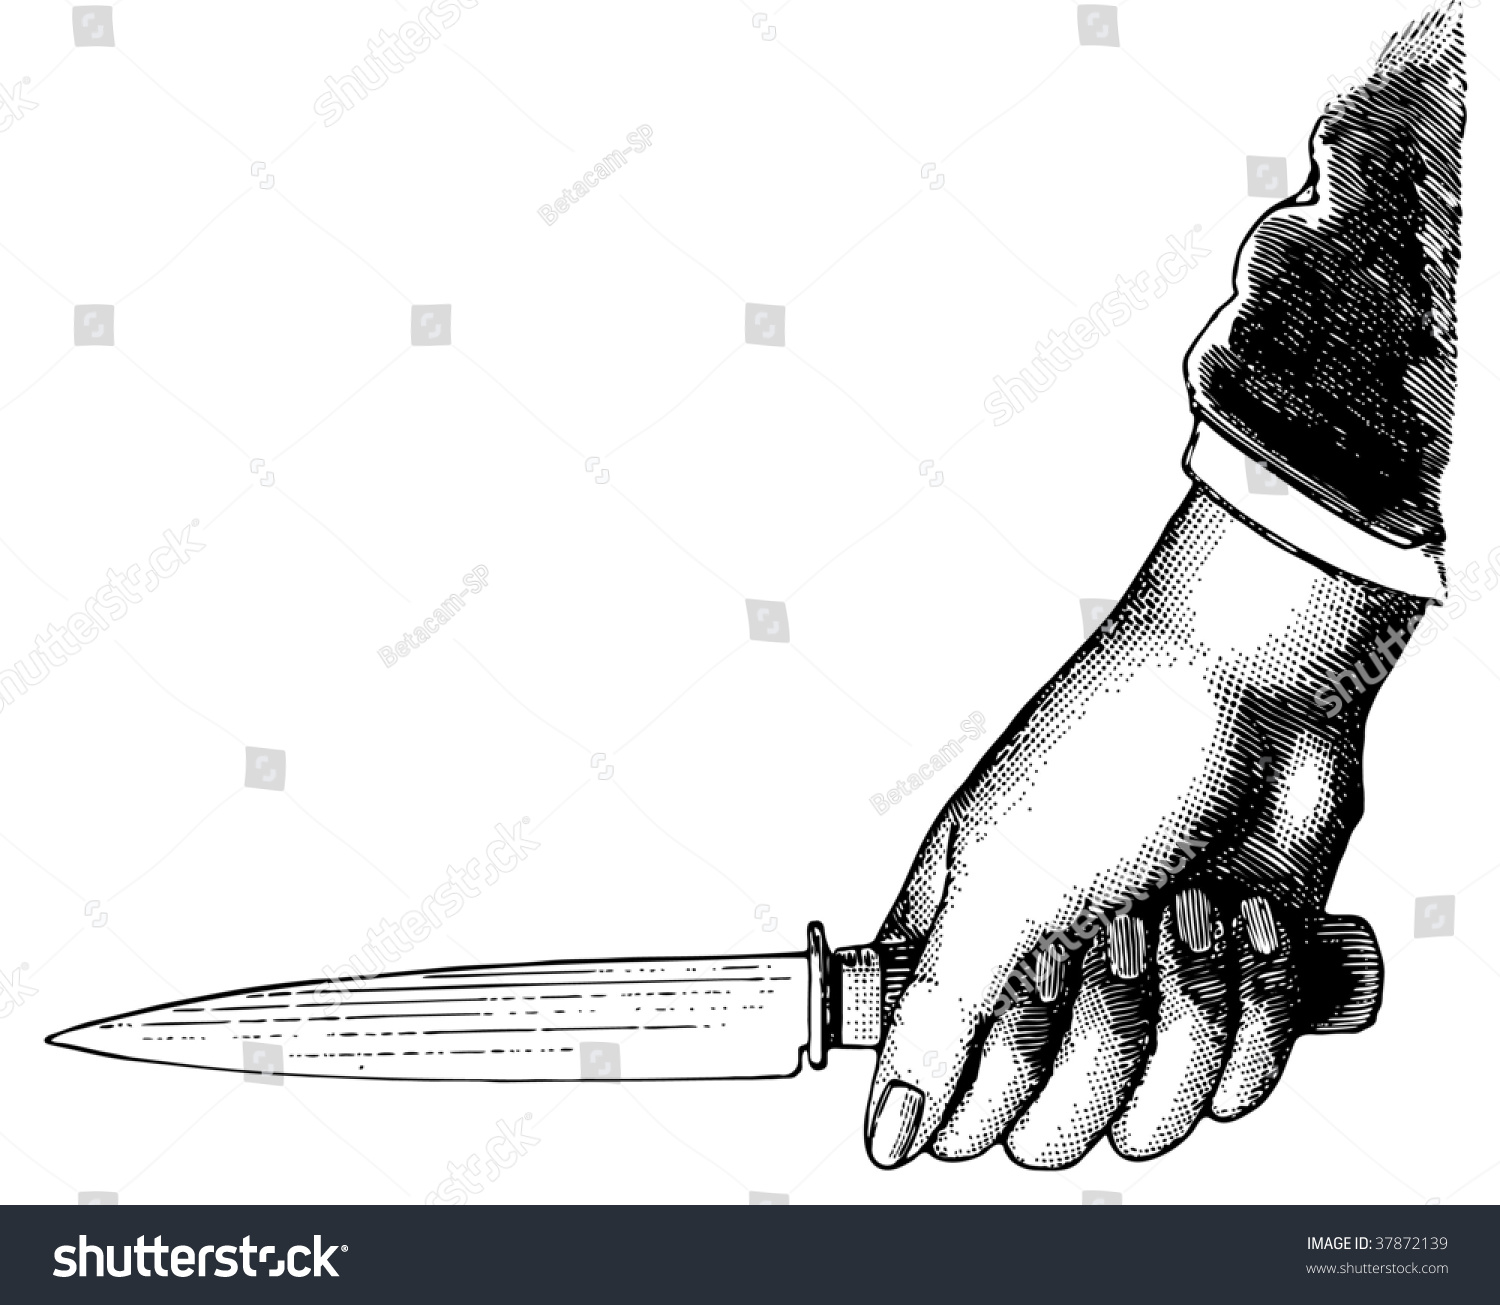 Нож в руке иллюстрация